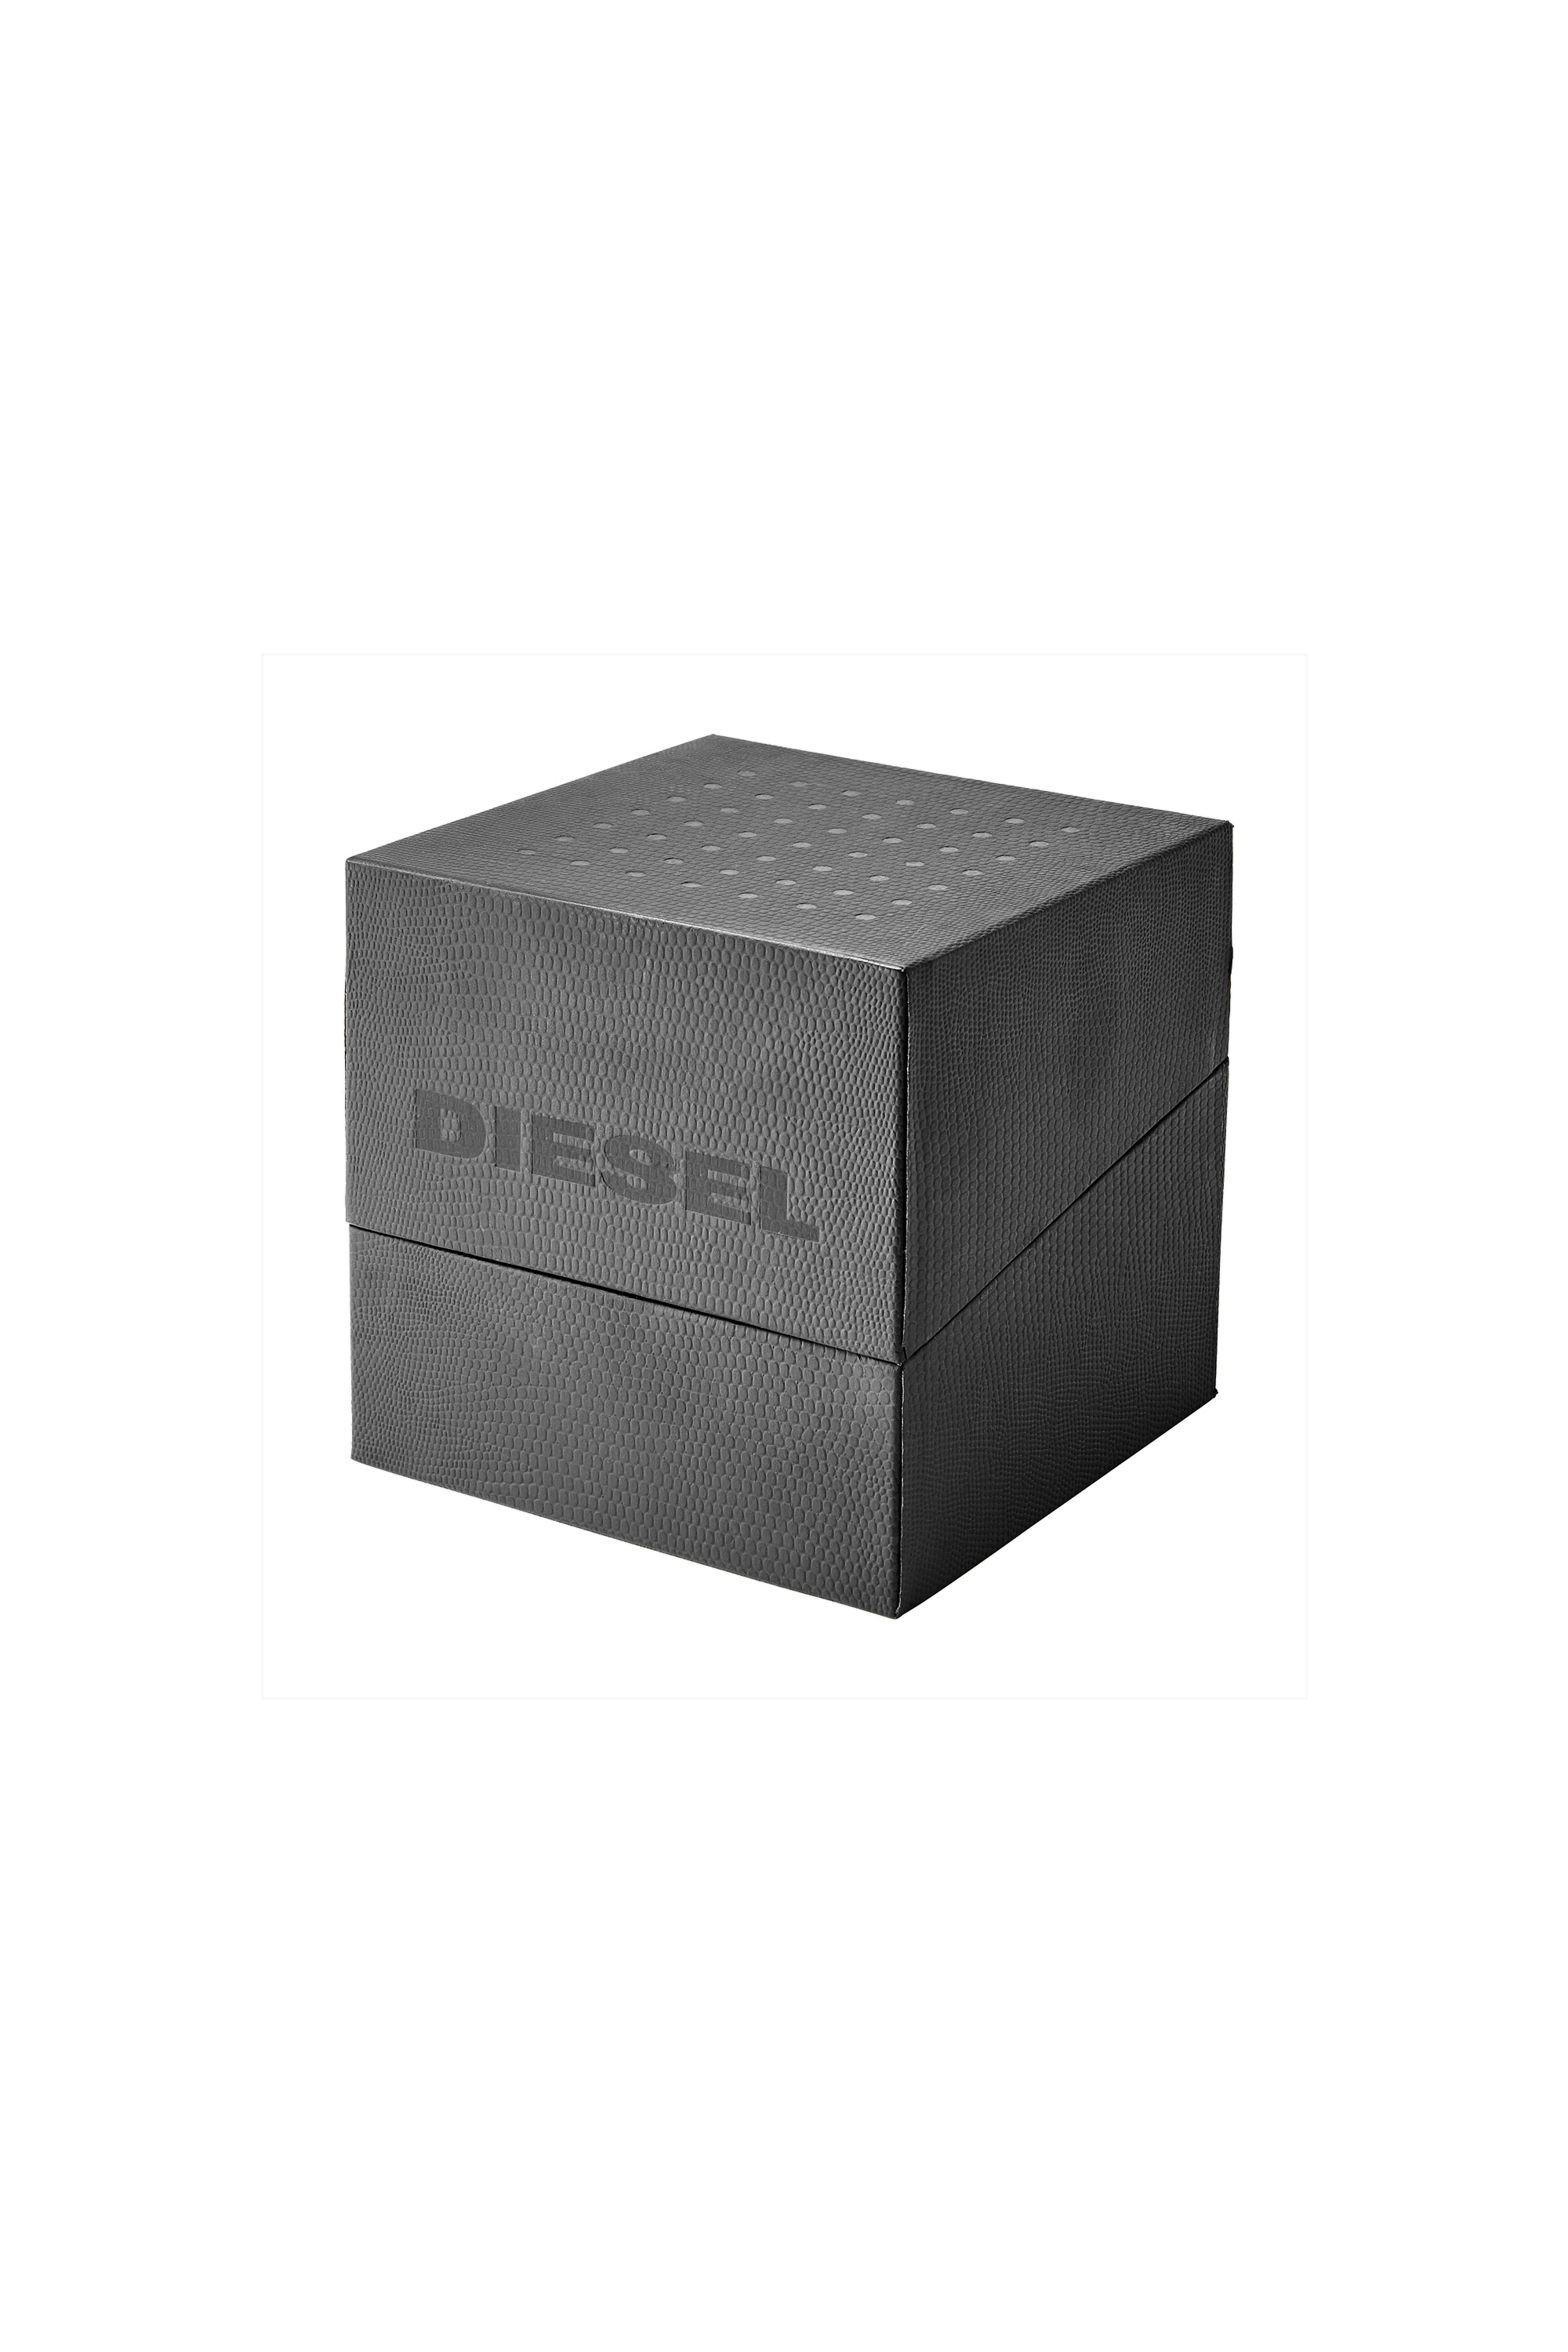 Diesel - DZ7429, Gris - Image 5